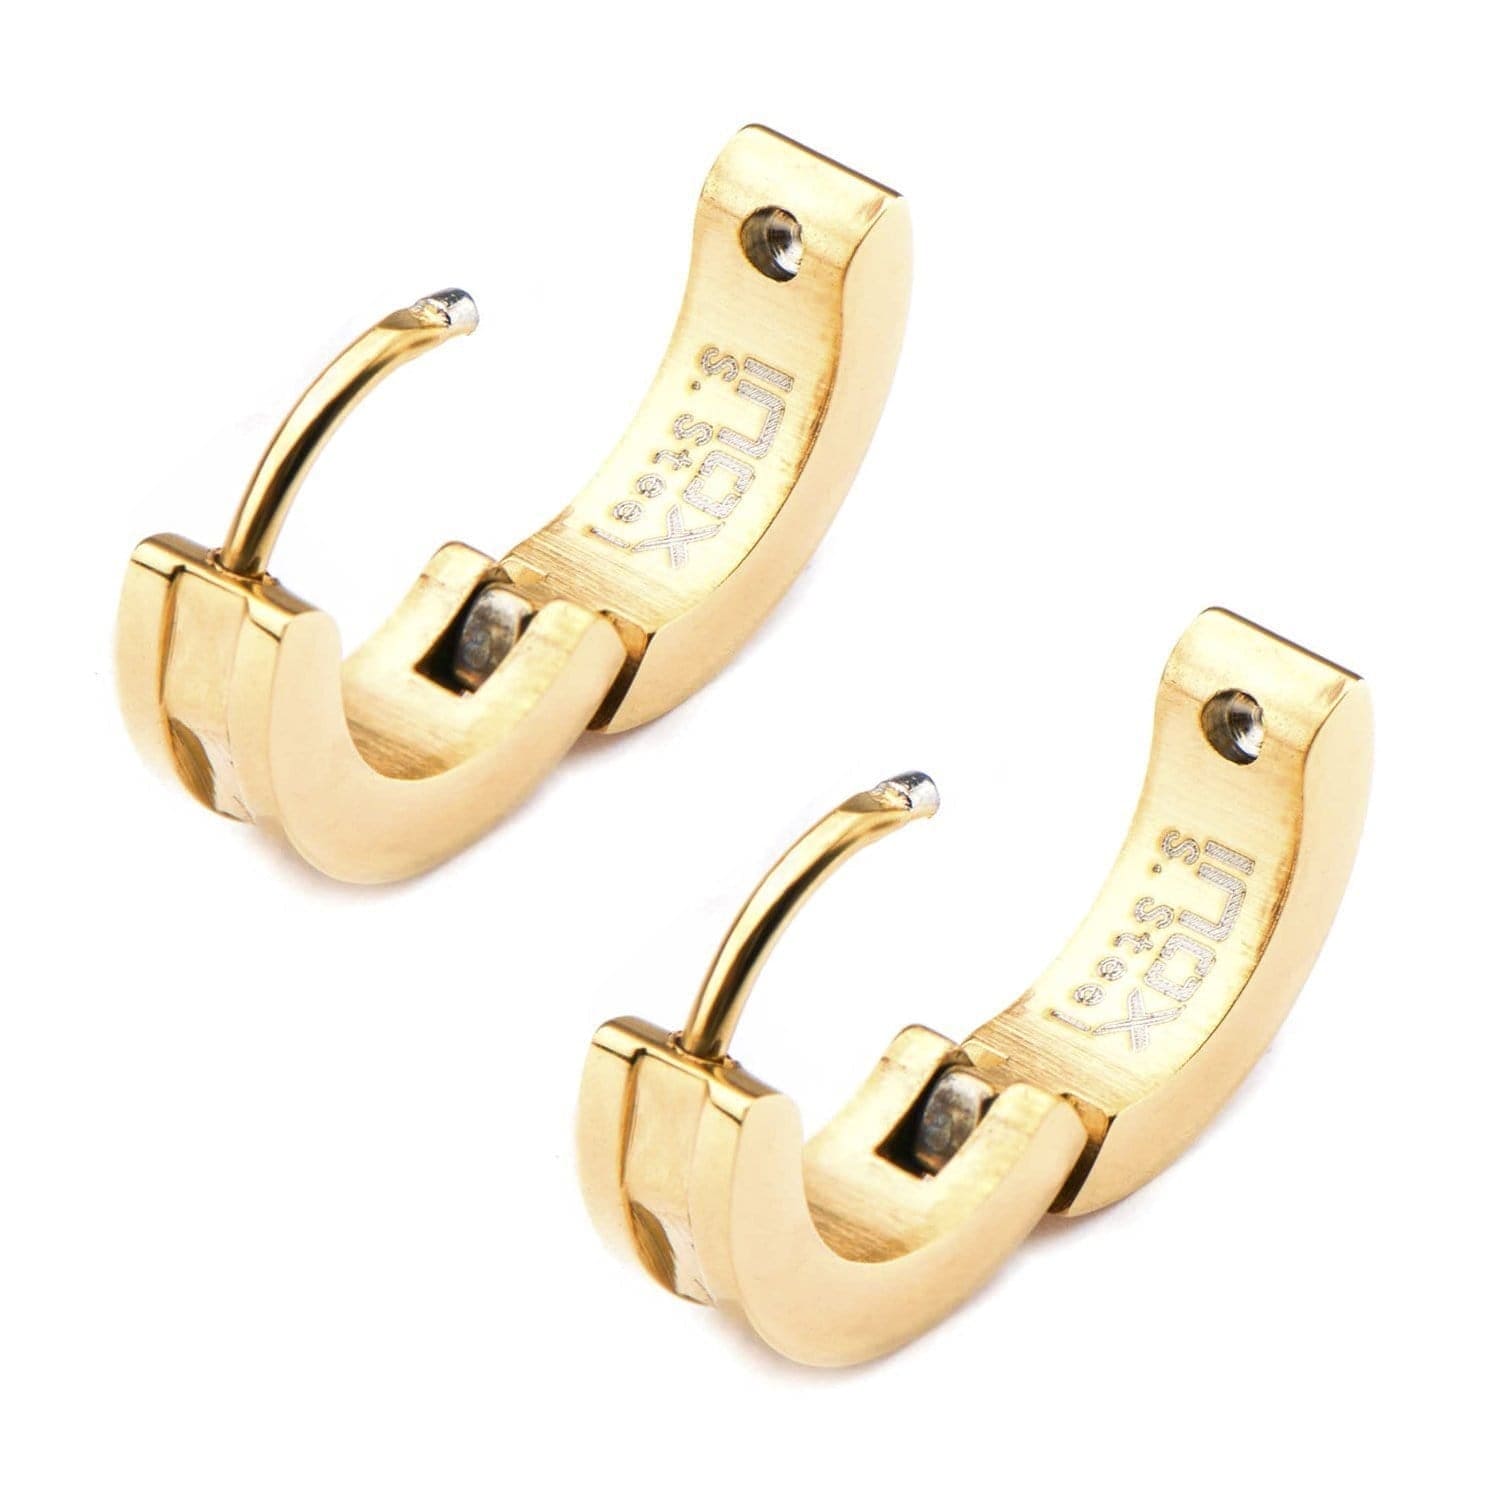 INOX JEWELRY Earrings Golden Tone Stainless Steel 4mm Industrial Cut Bali SSE323175GLD